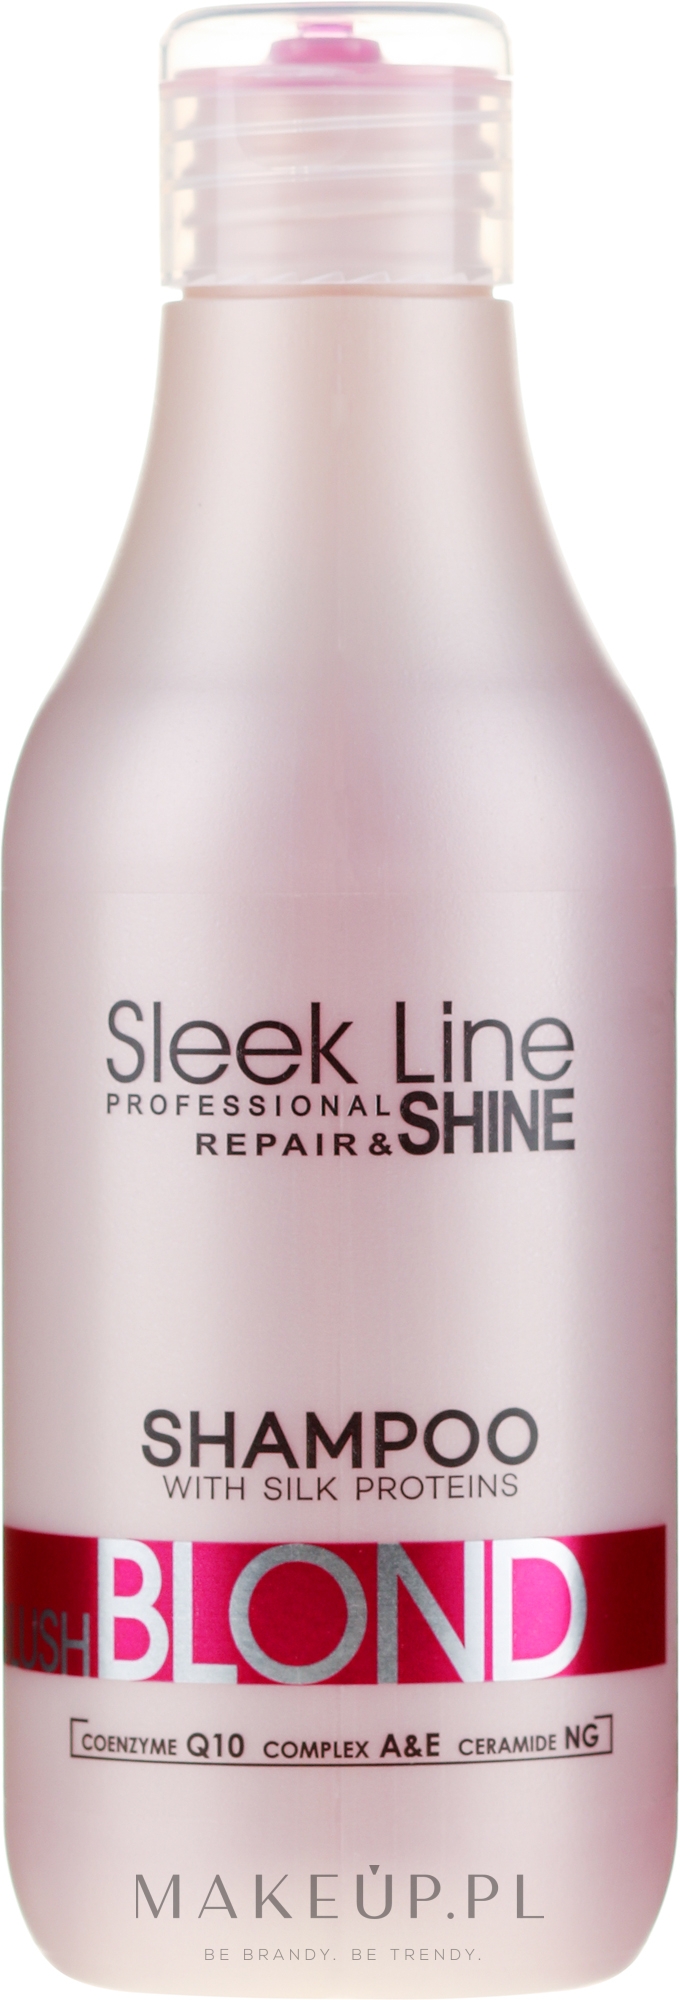 sleek line szampon do włosów ciemnych